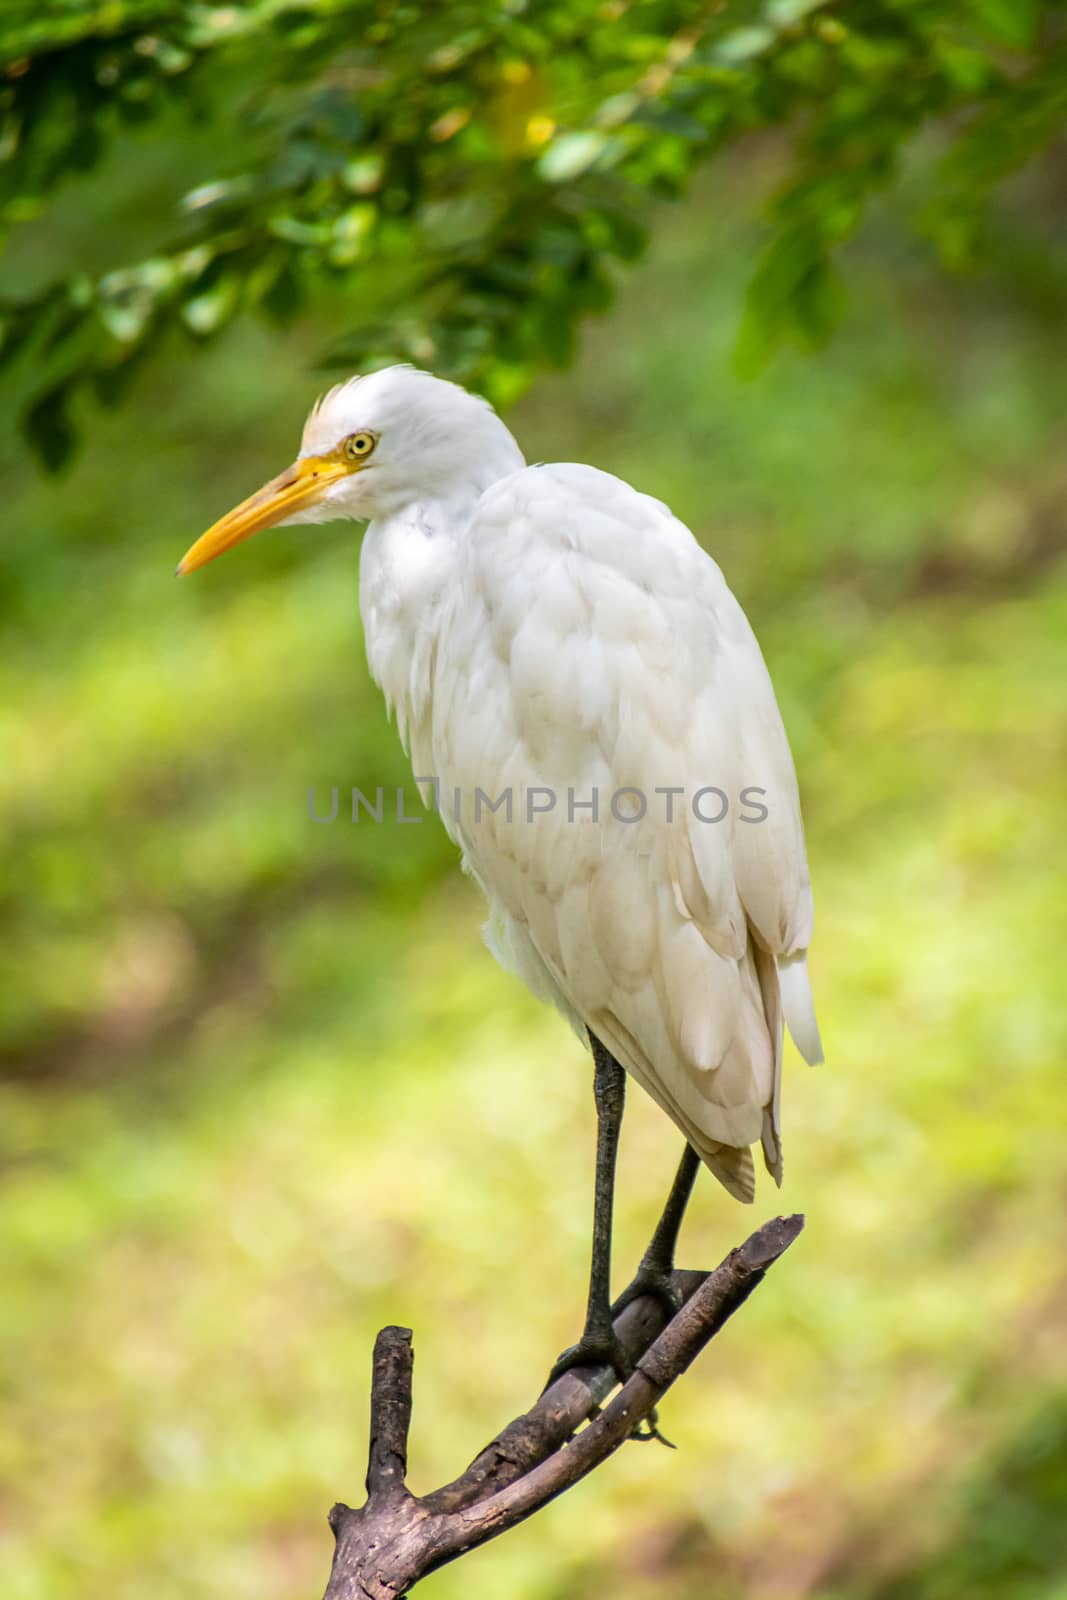 White crane bird sitting on branch in Asia